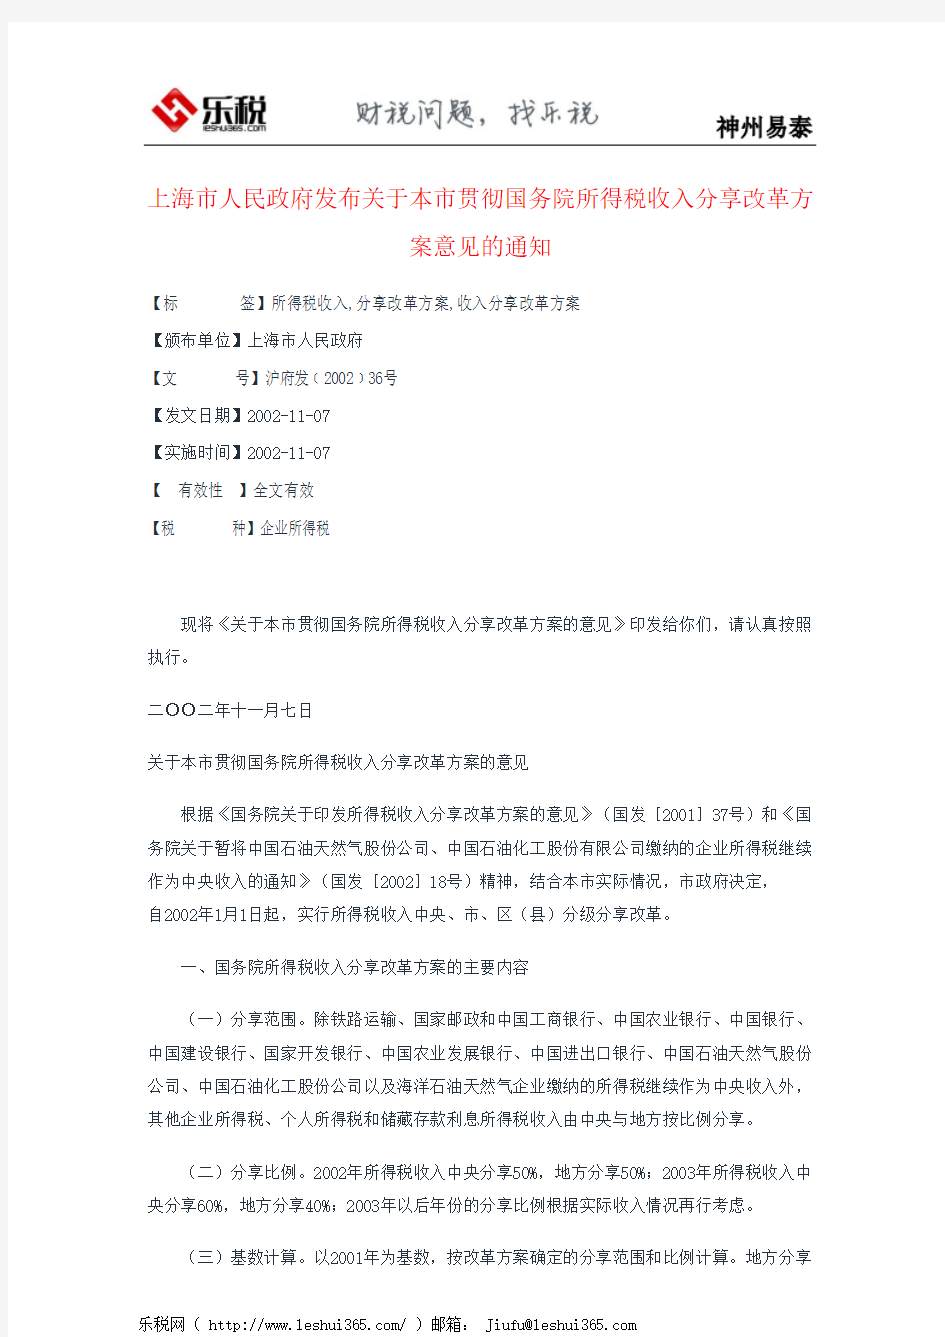 上海市人民政府发布关于本市贯彻国务院所得税收入分享改革方案意